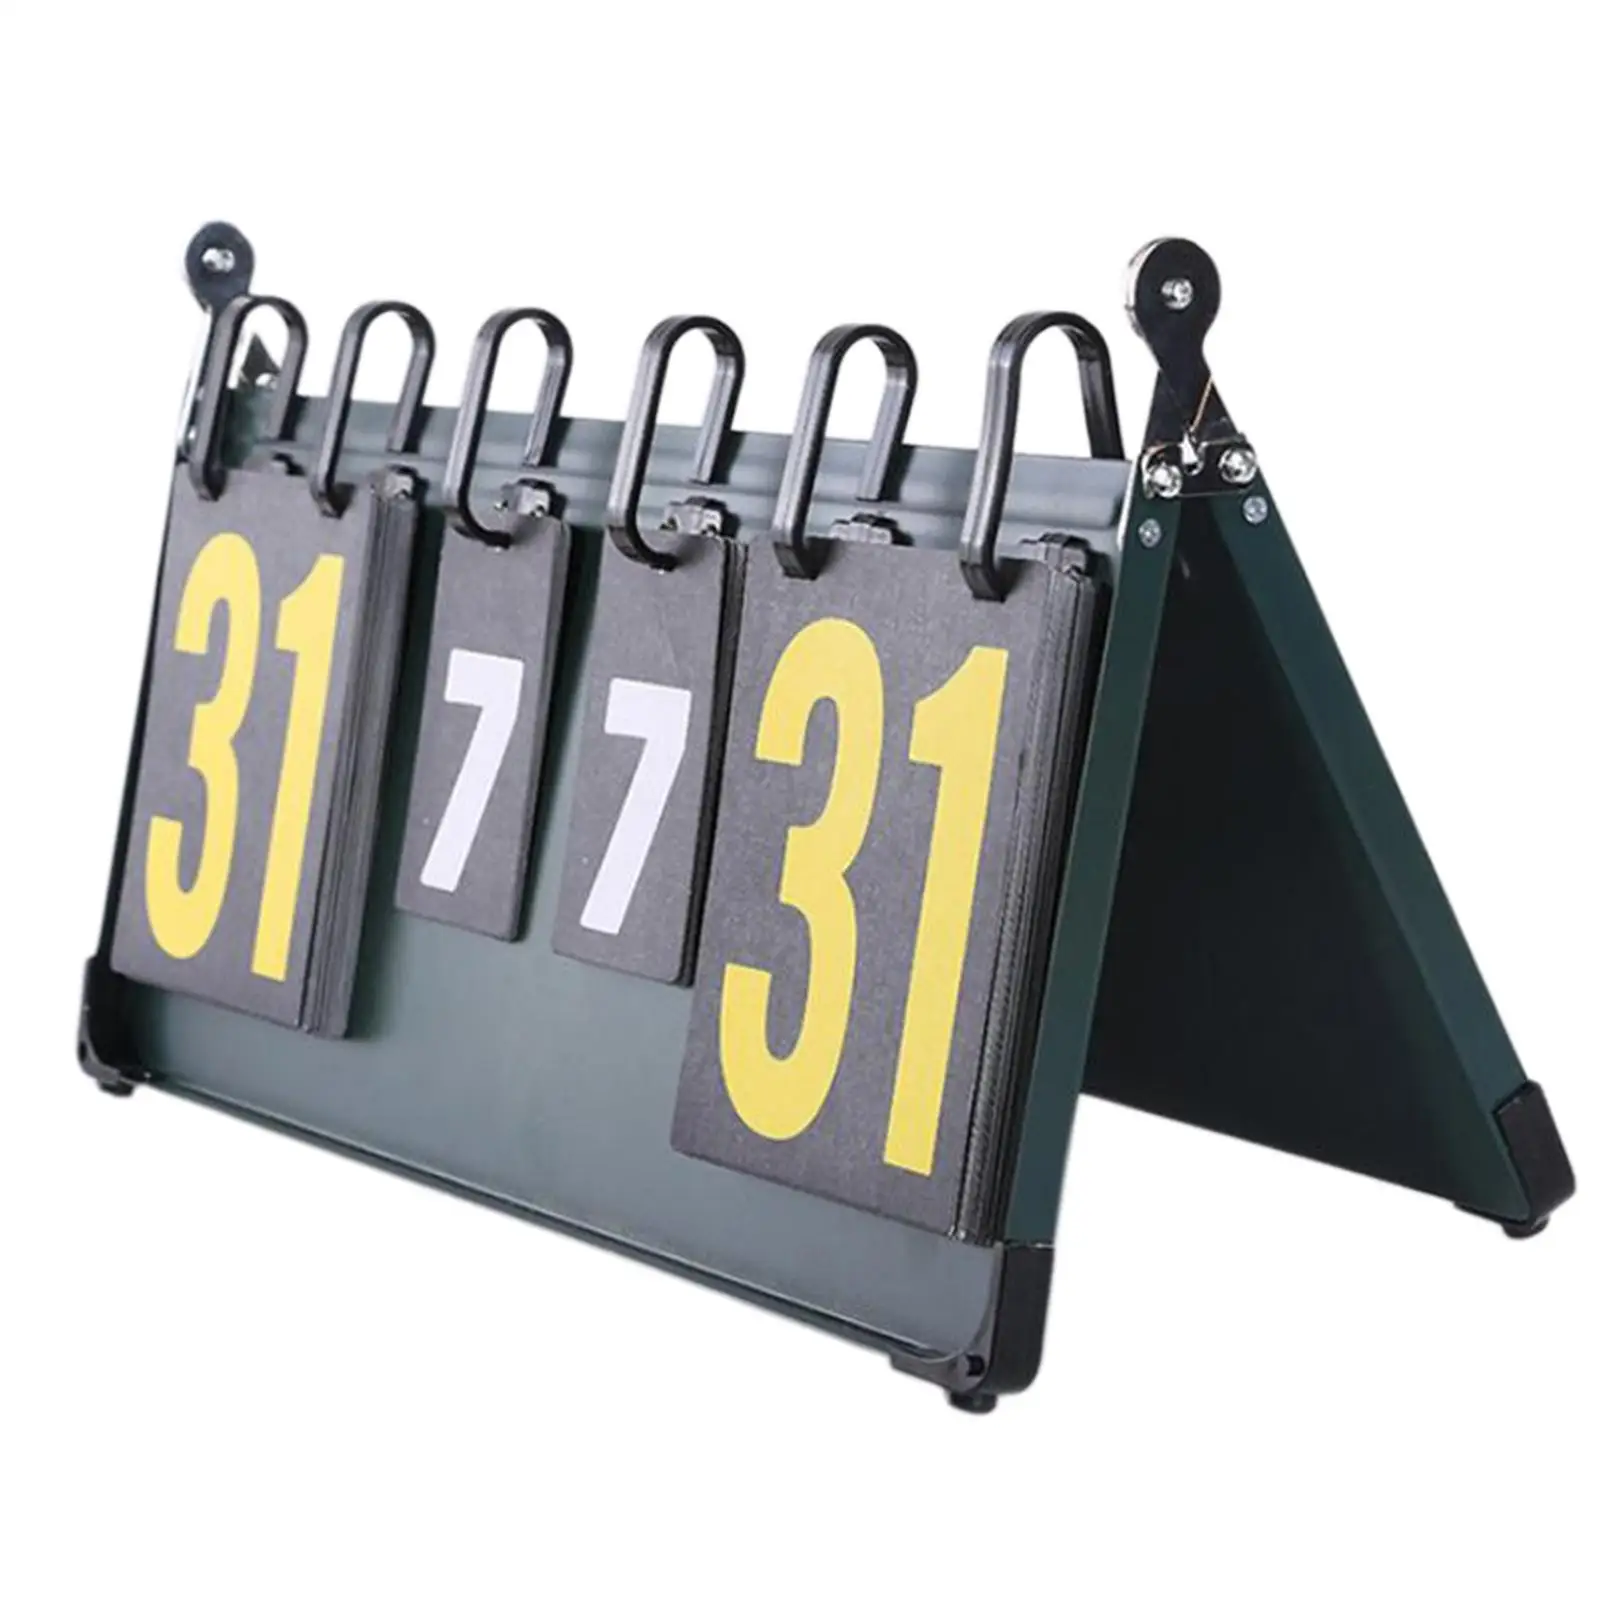 Table Scoreboard Professional Scorekeeper Score Keeper Score Board for